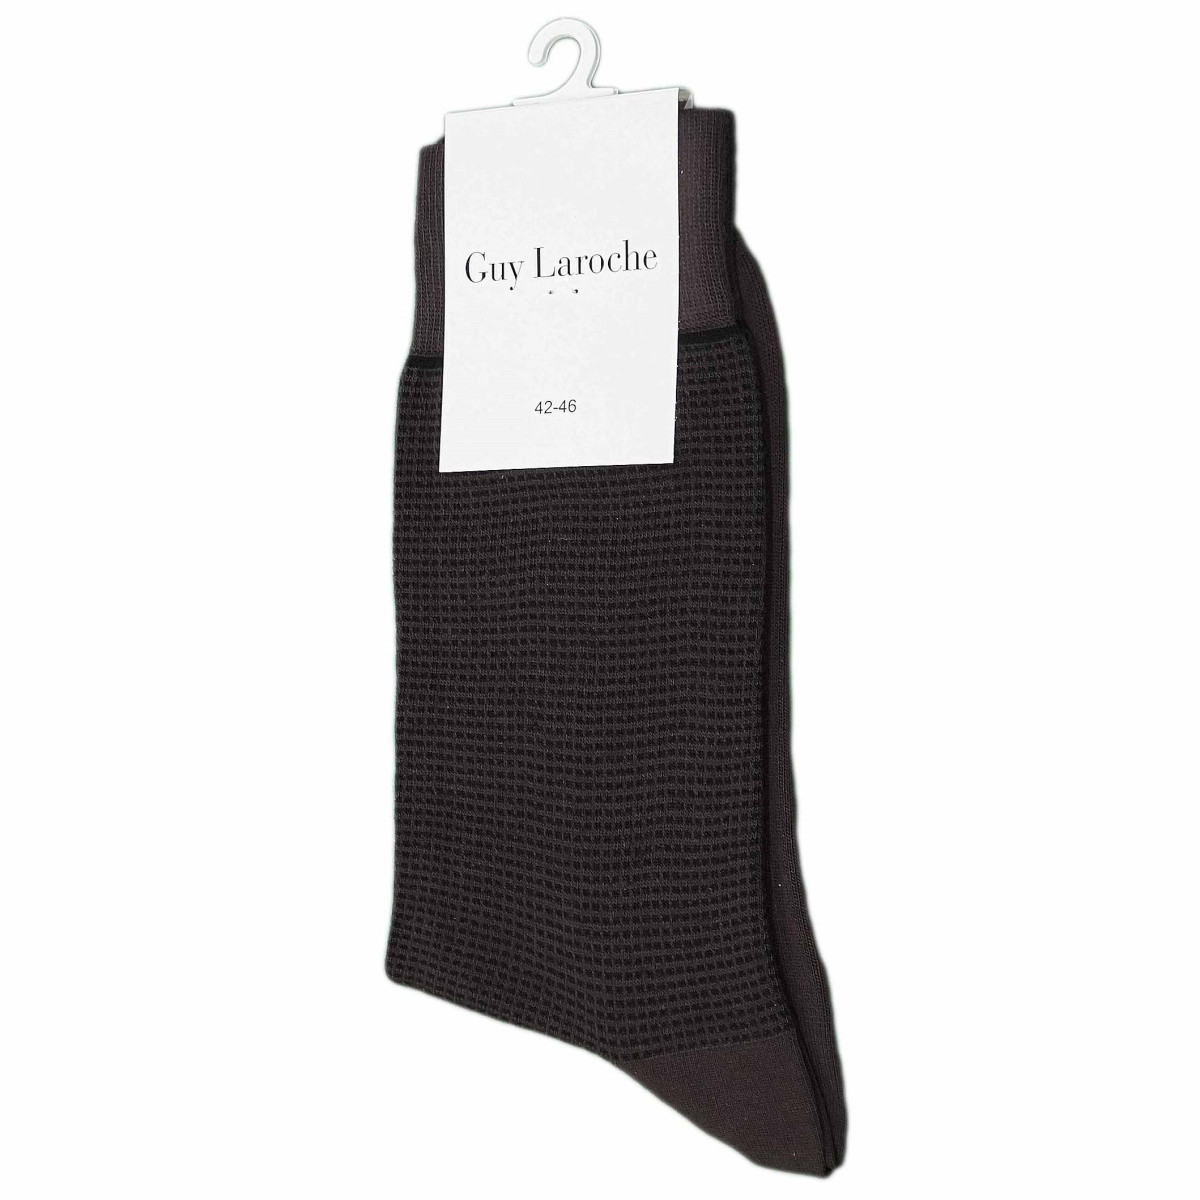 Κάλτσα Guy Laroche με μικροσχέδιο 1820GL BROWN